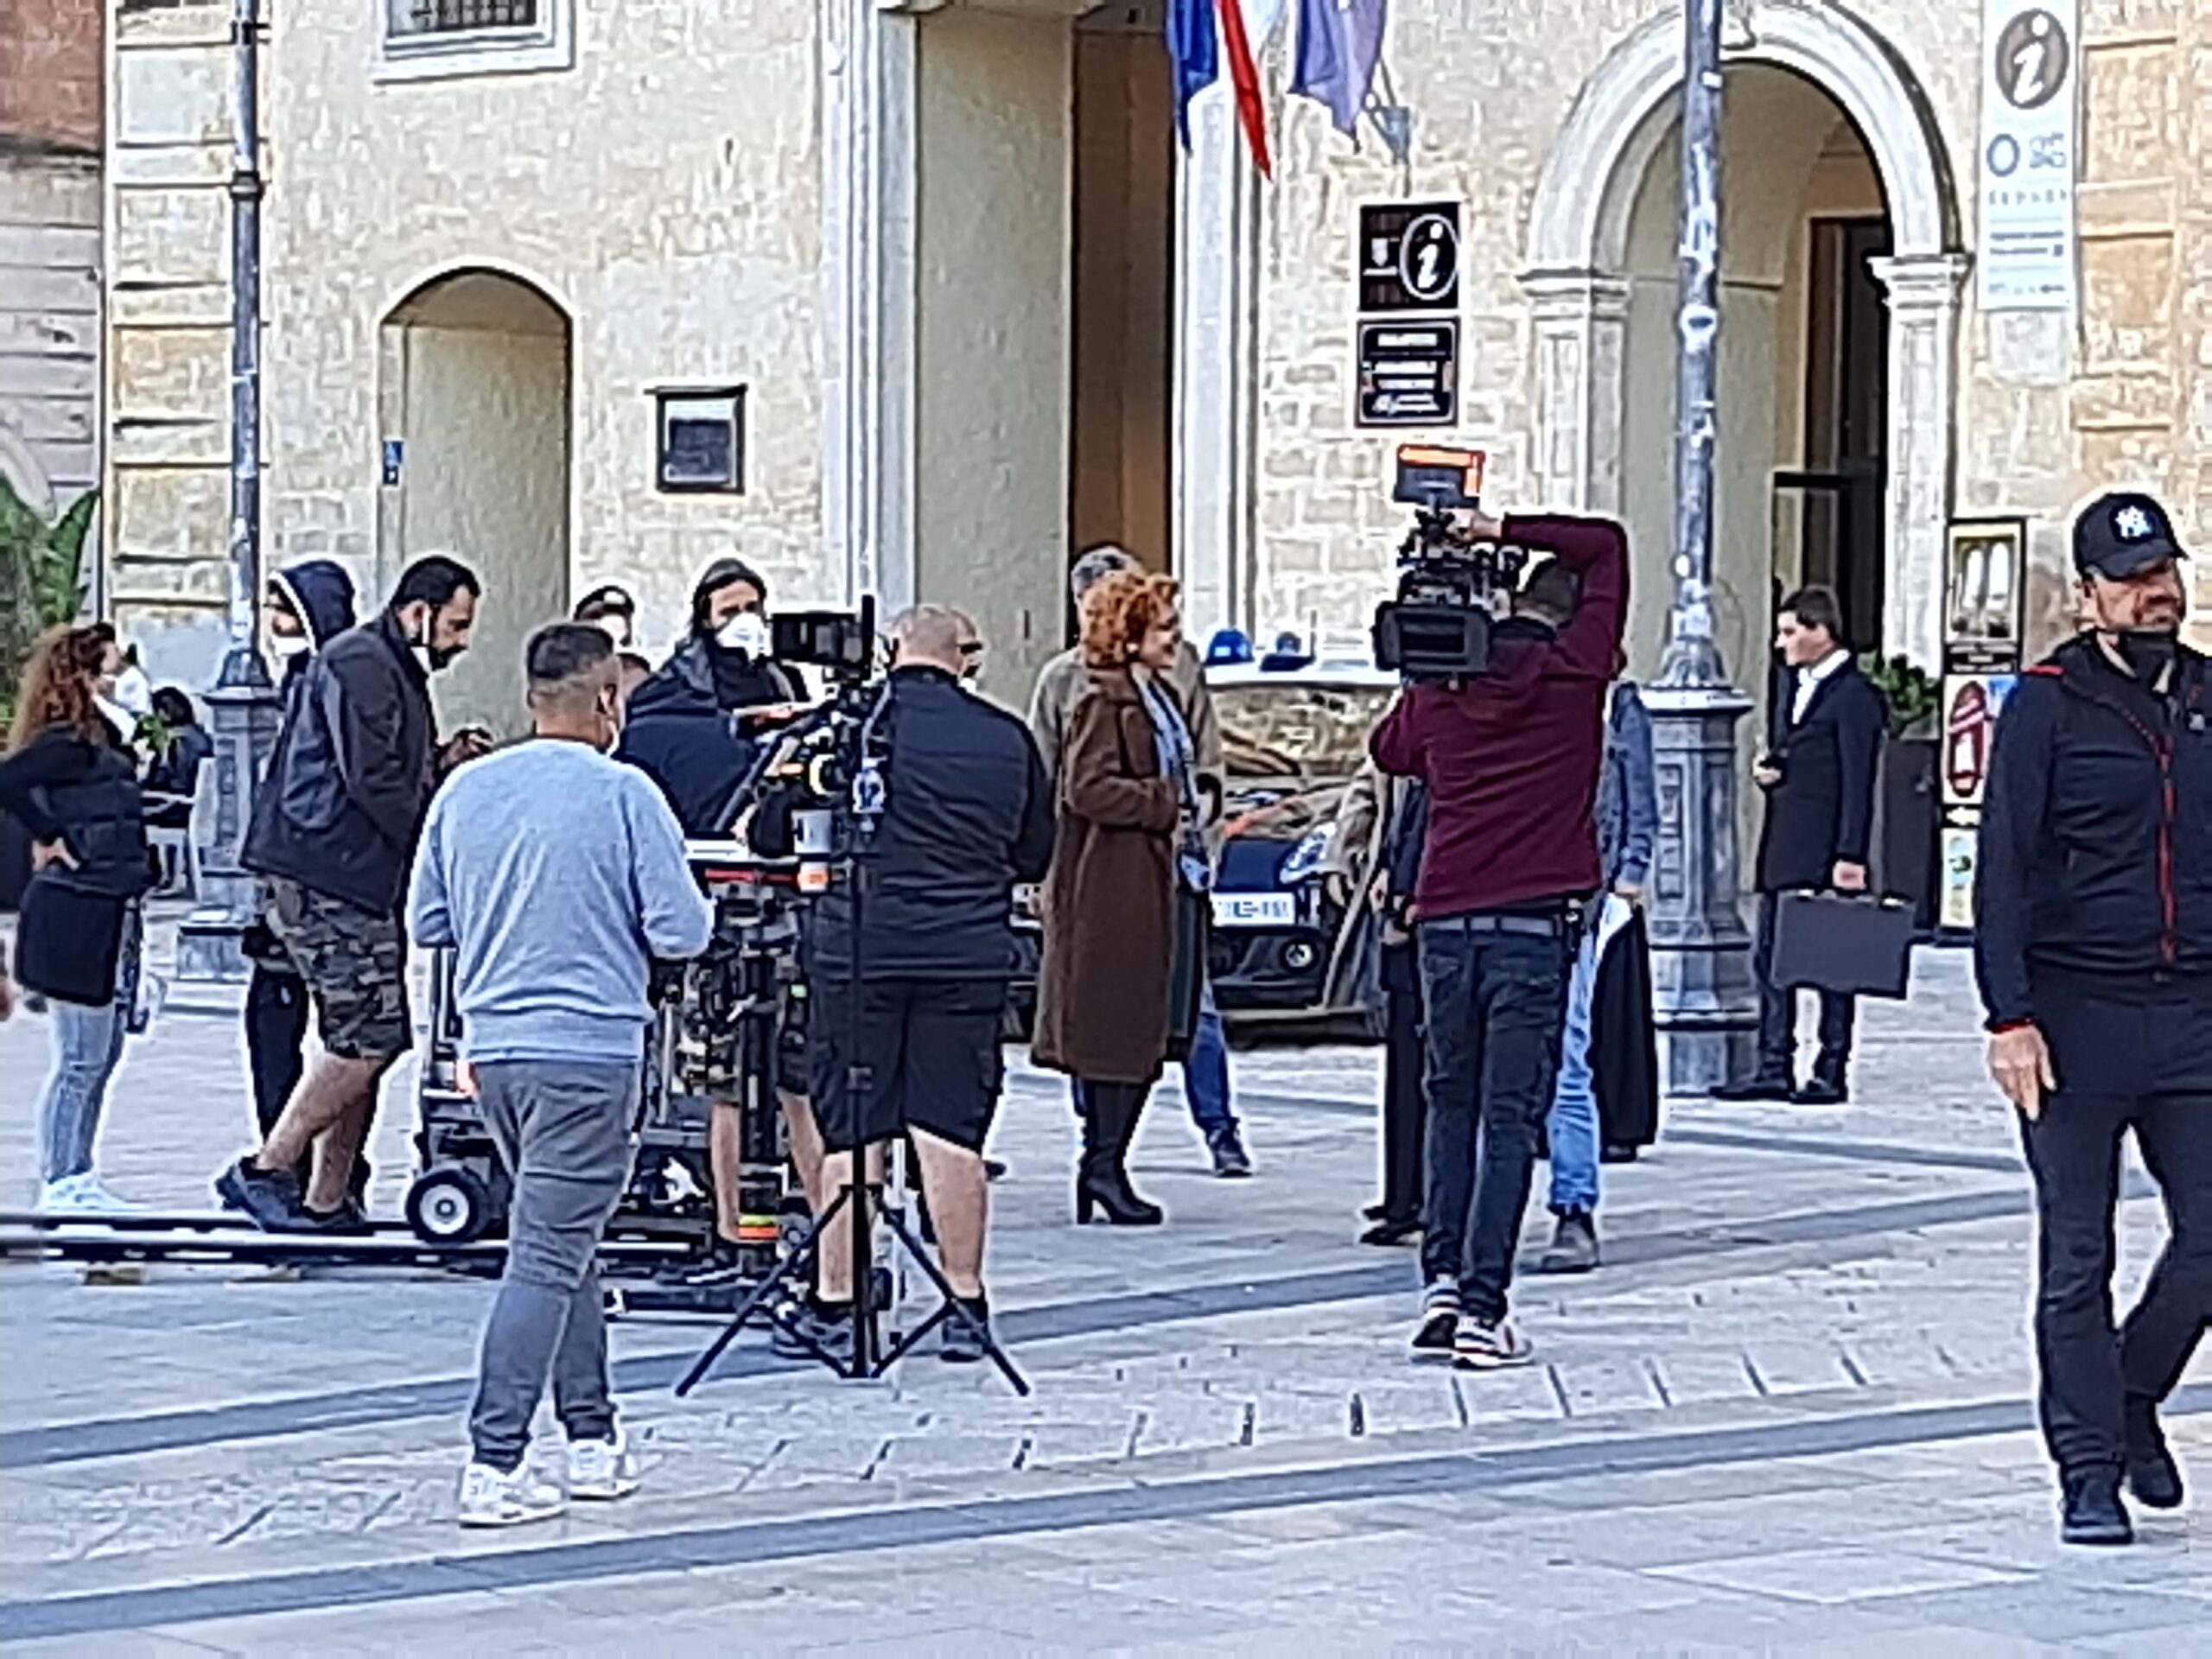 Matera, ciak in piazza Vittorio Veneto per “Imma Tataranni – Sostituto procuratore”